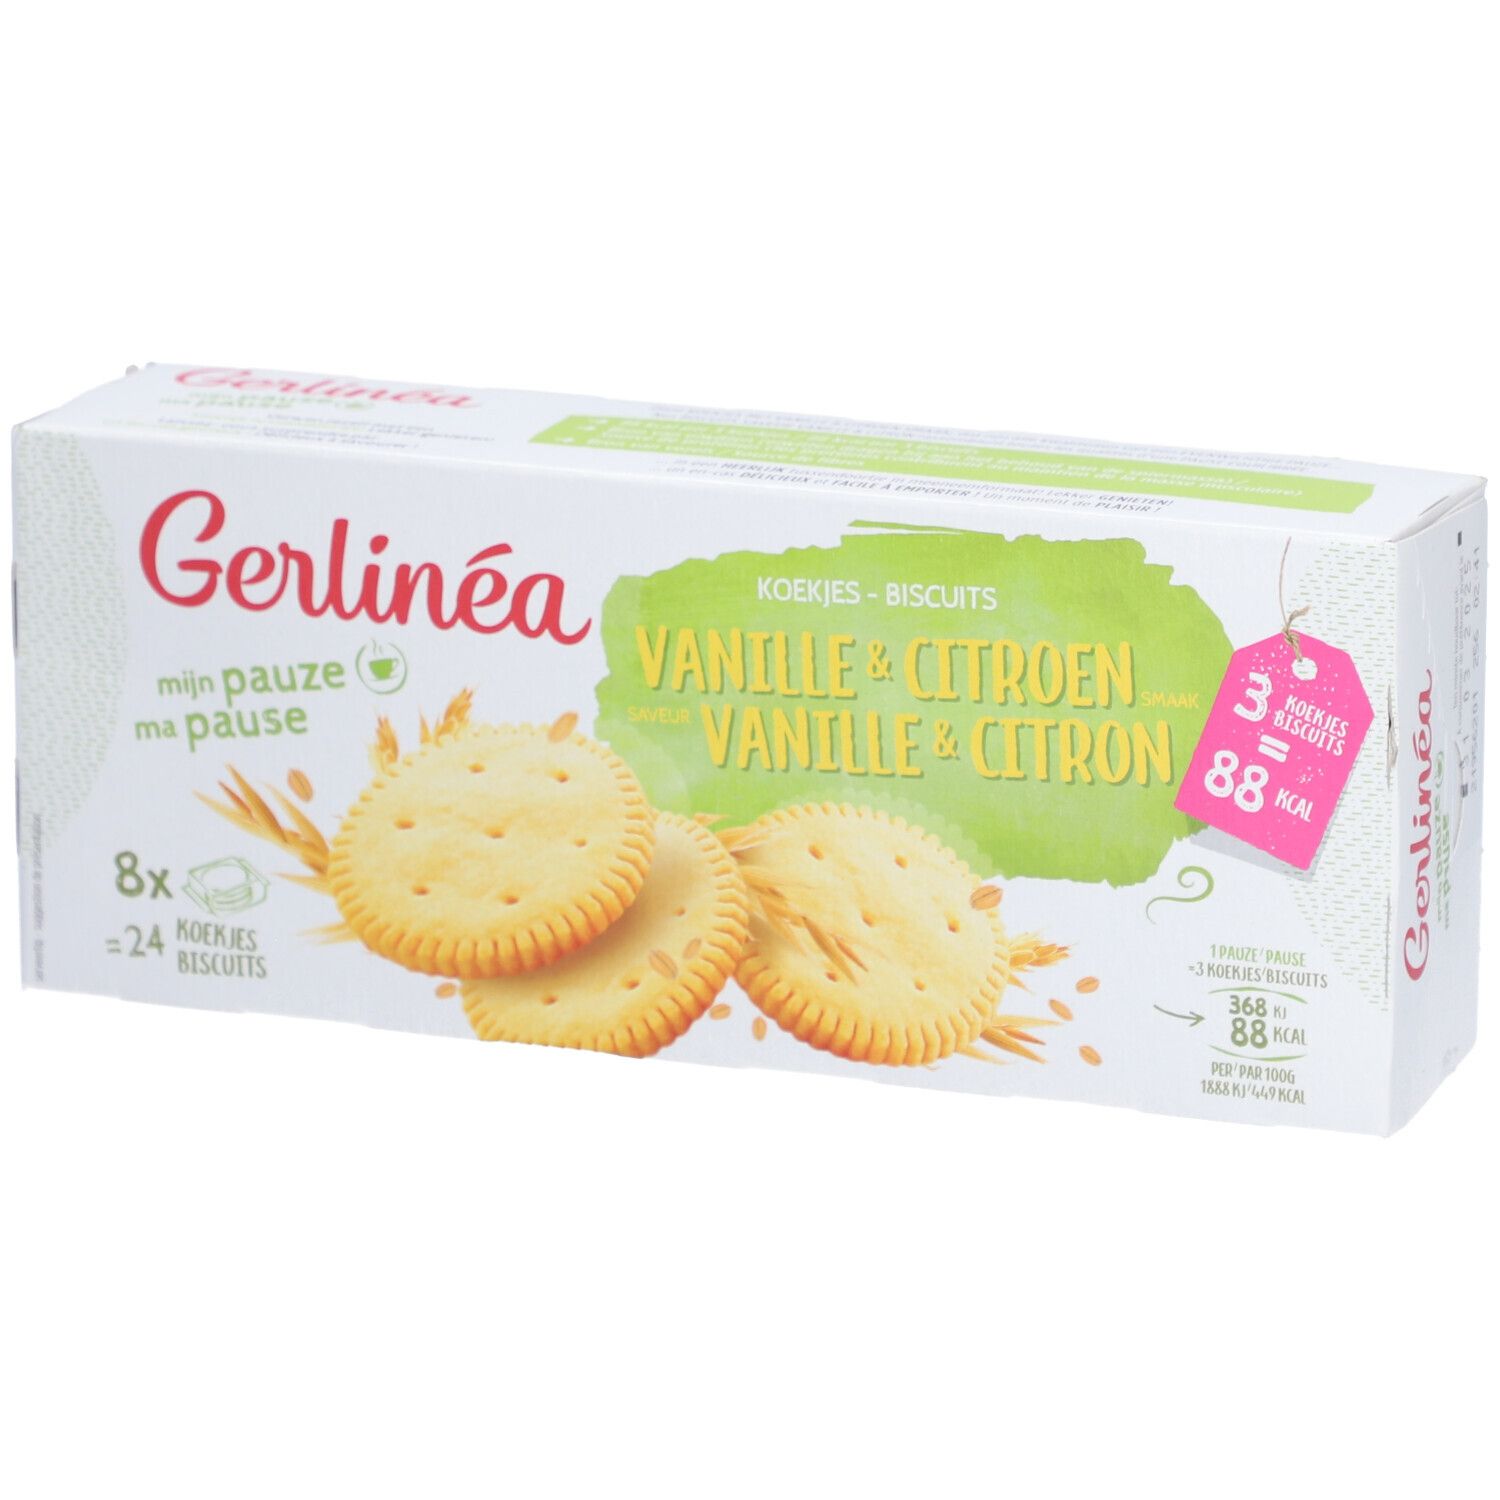 Gerlinéa Biscuits Vanille & Citron